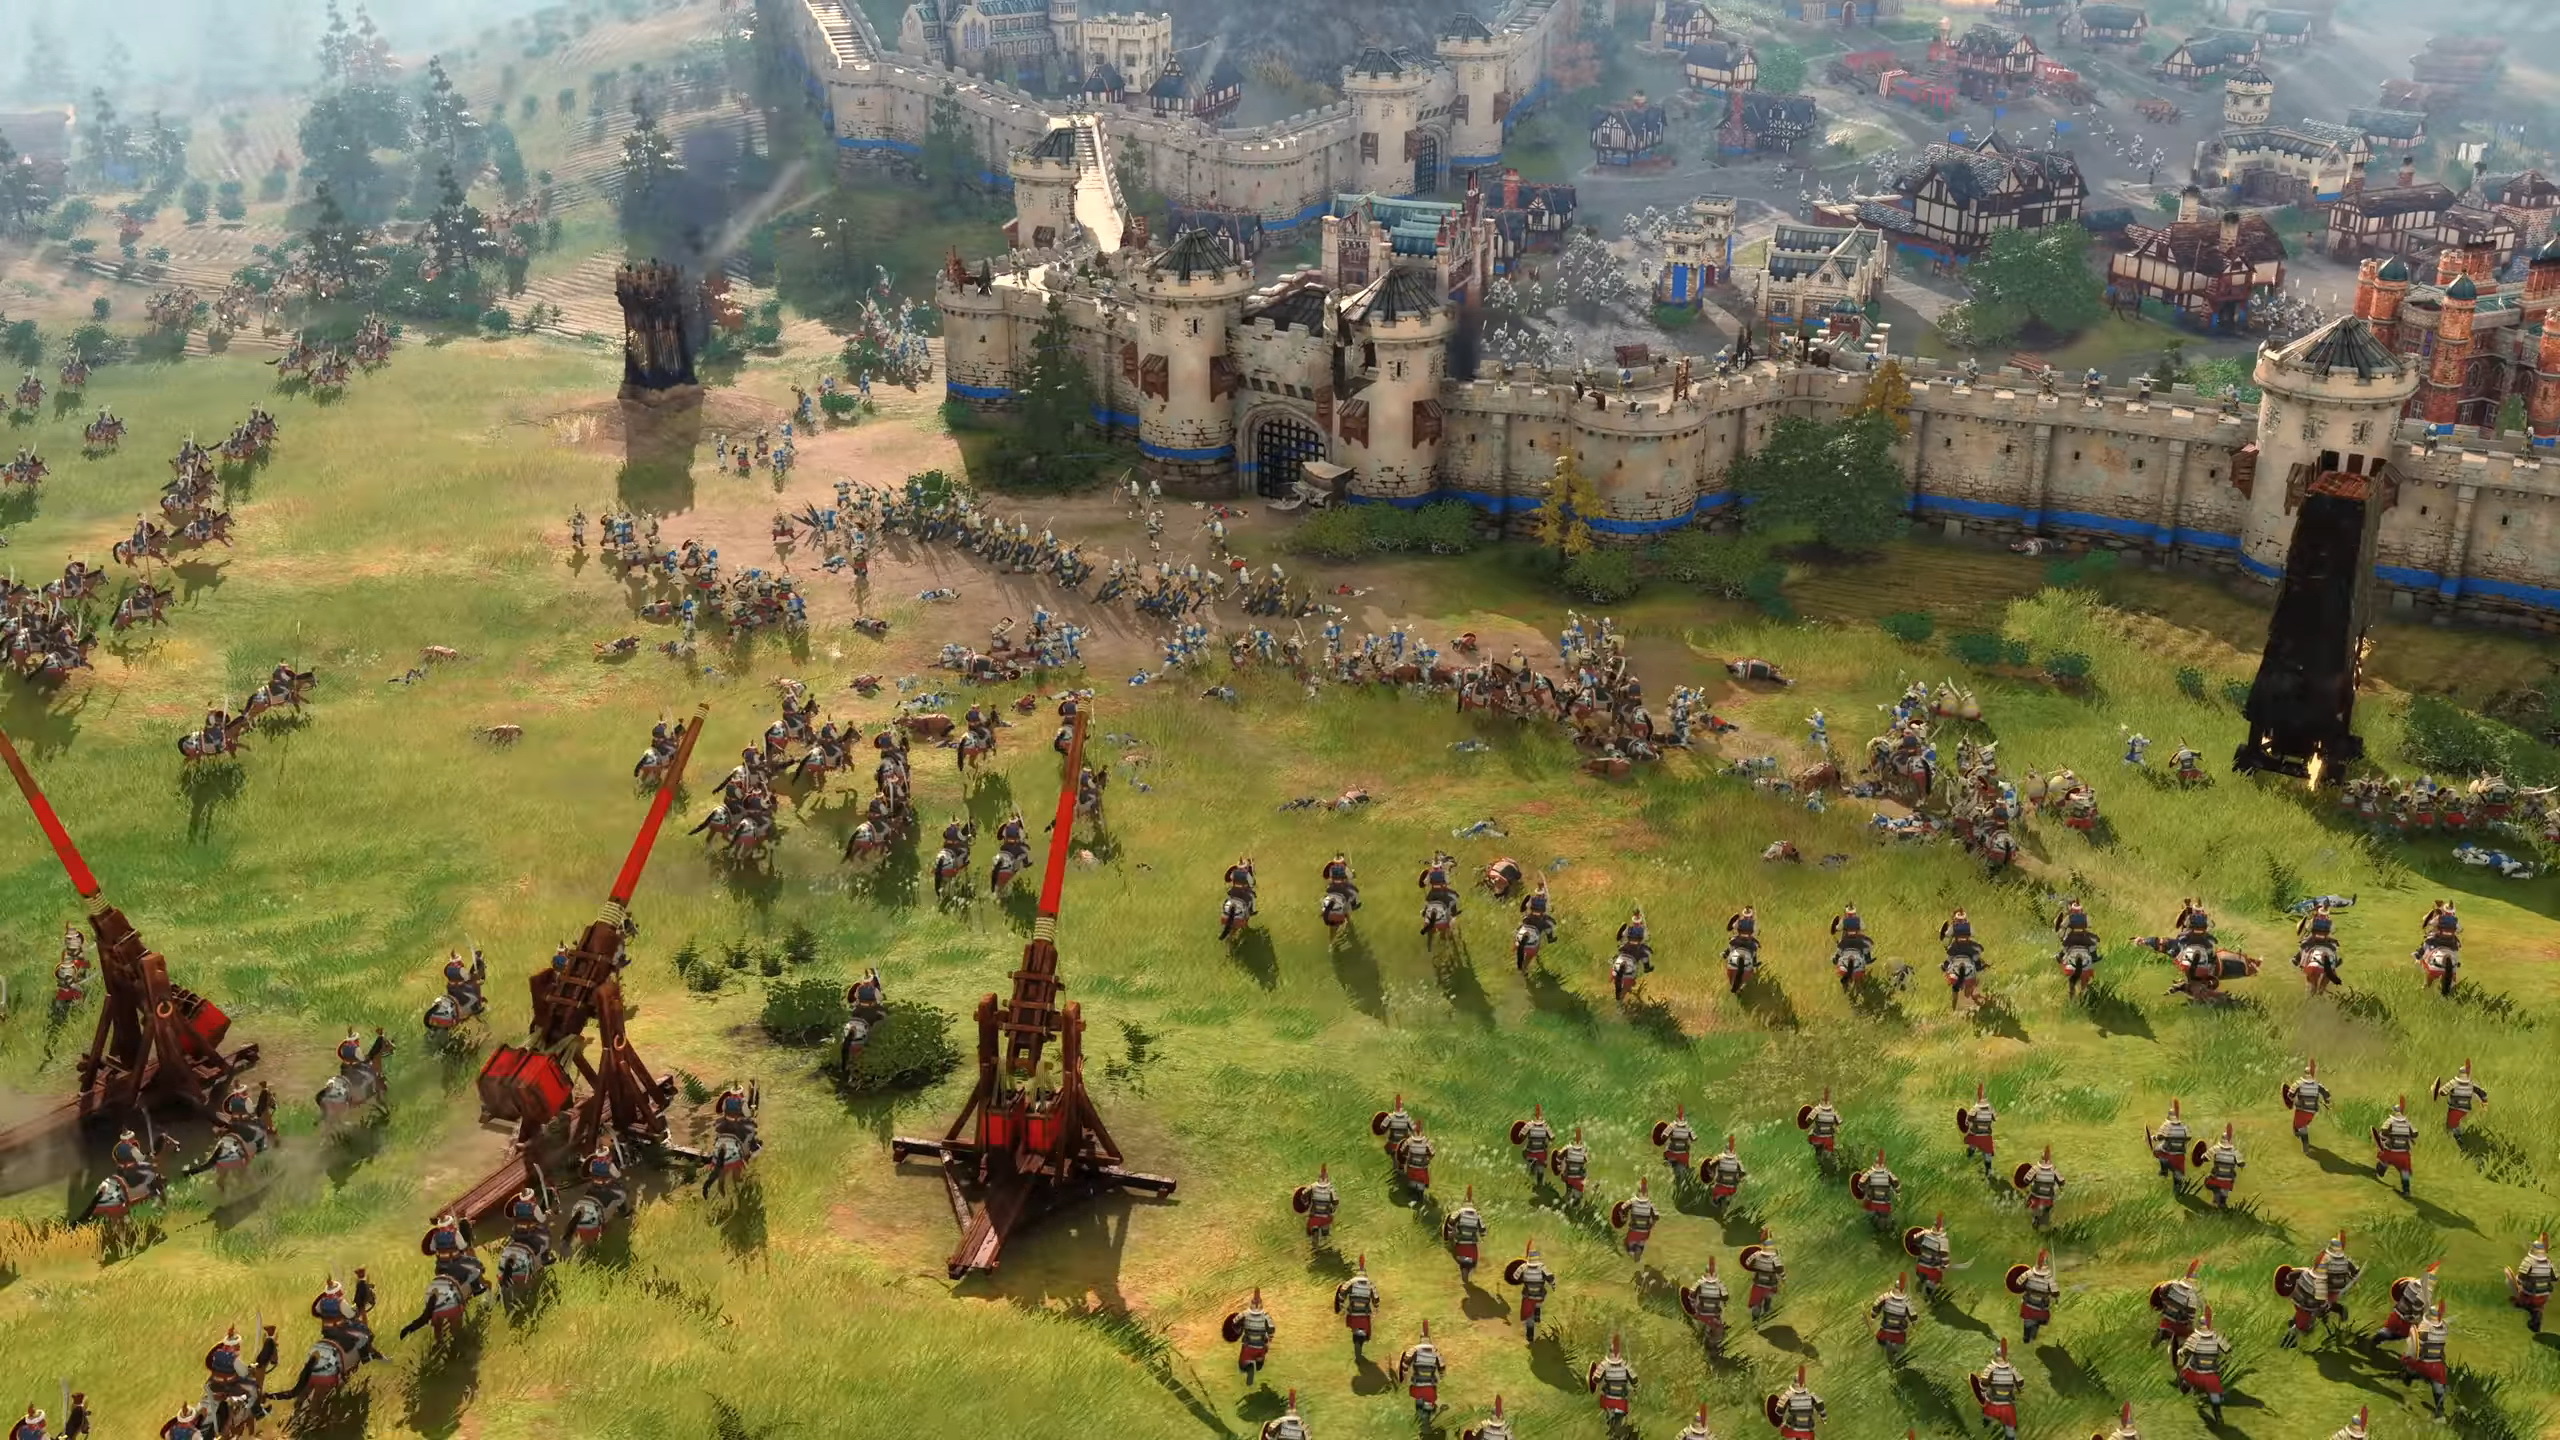 微软大力支持《帝国时代》系列 帝国时代4最快明年上市